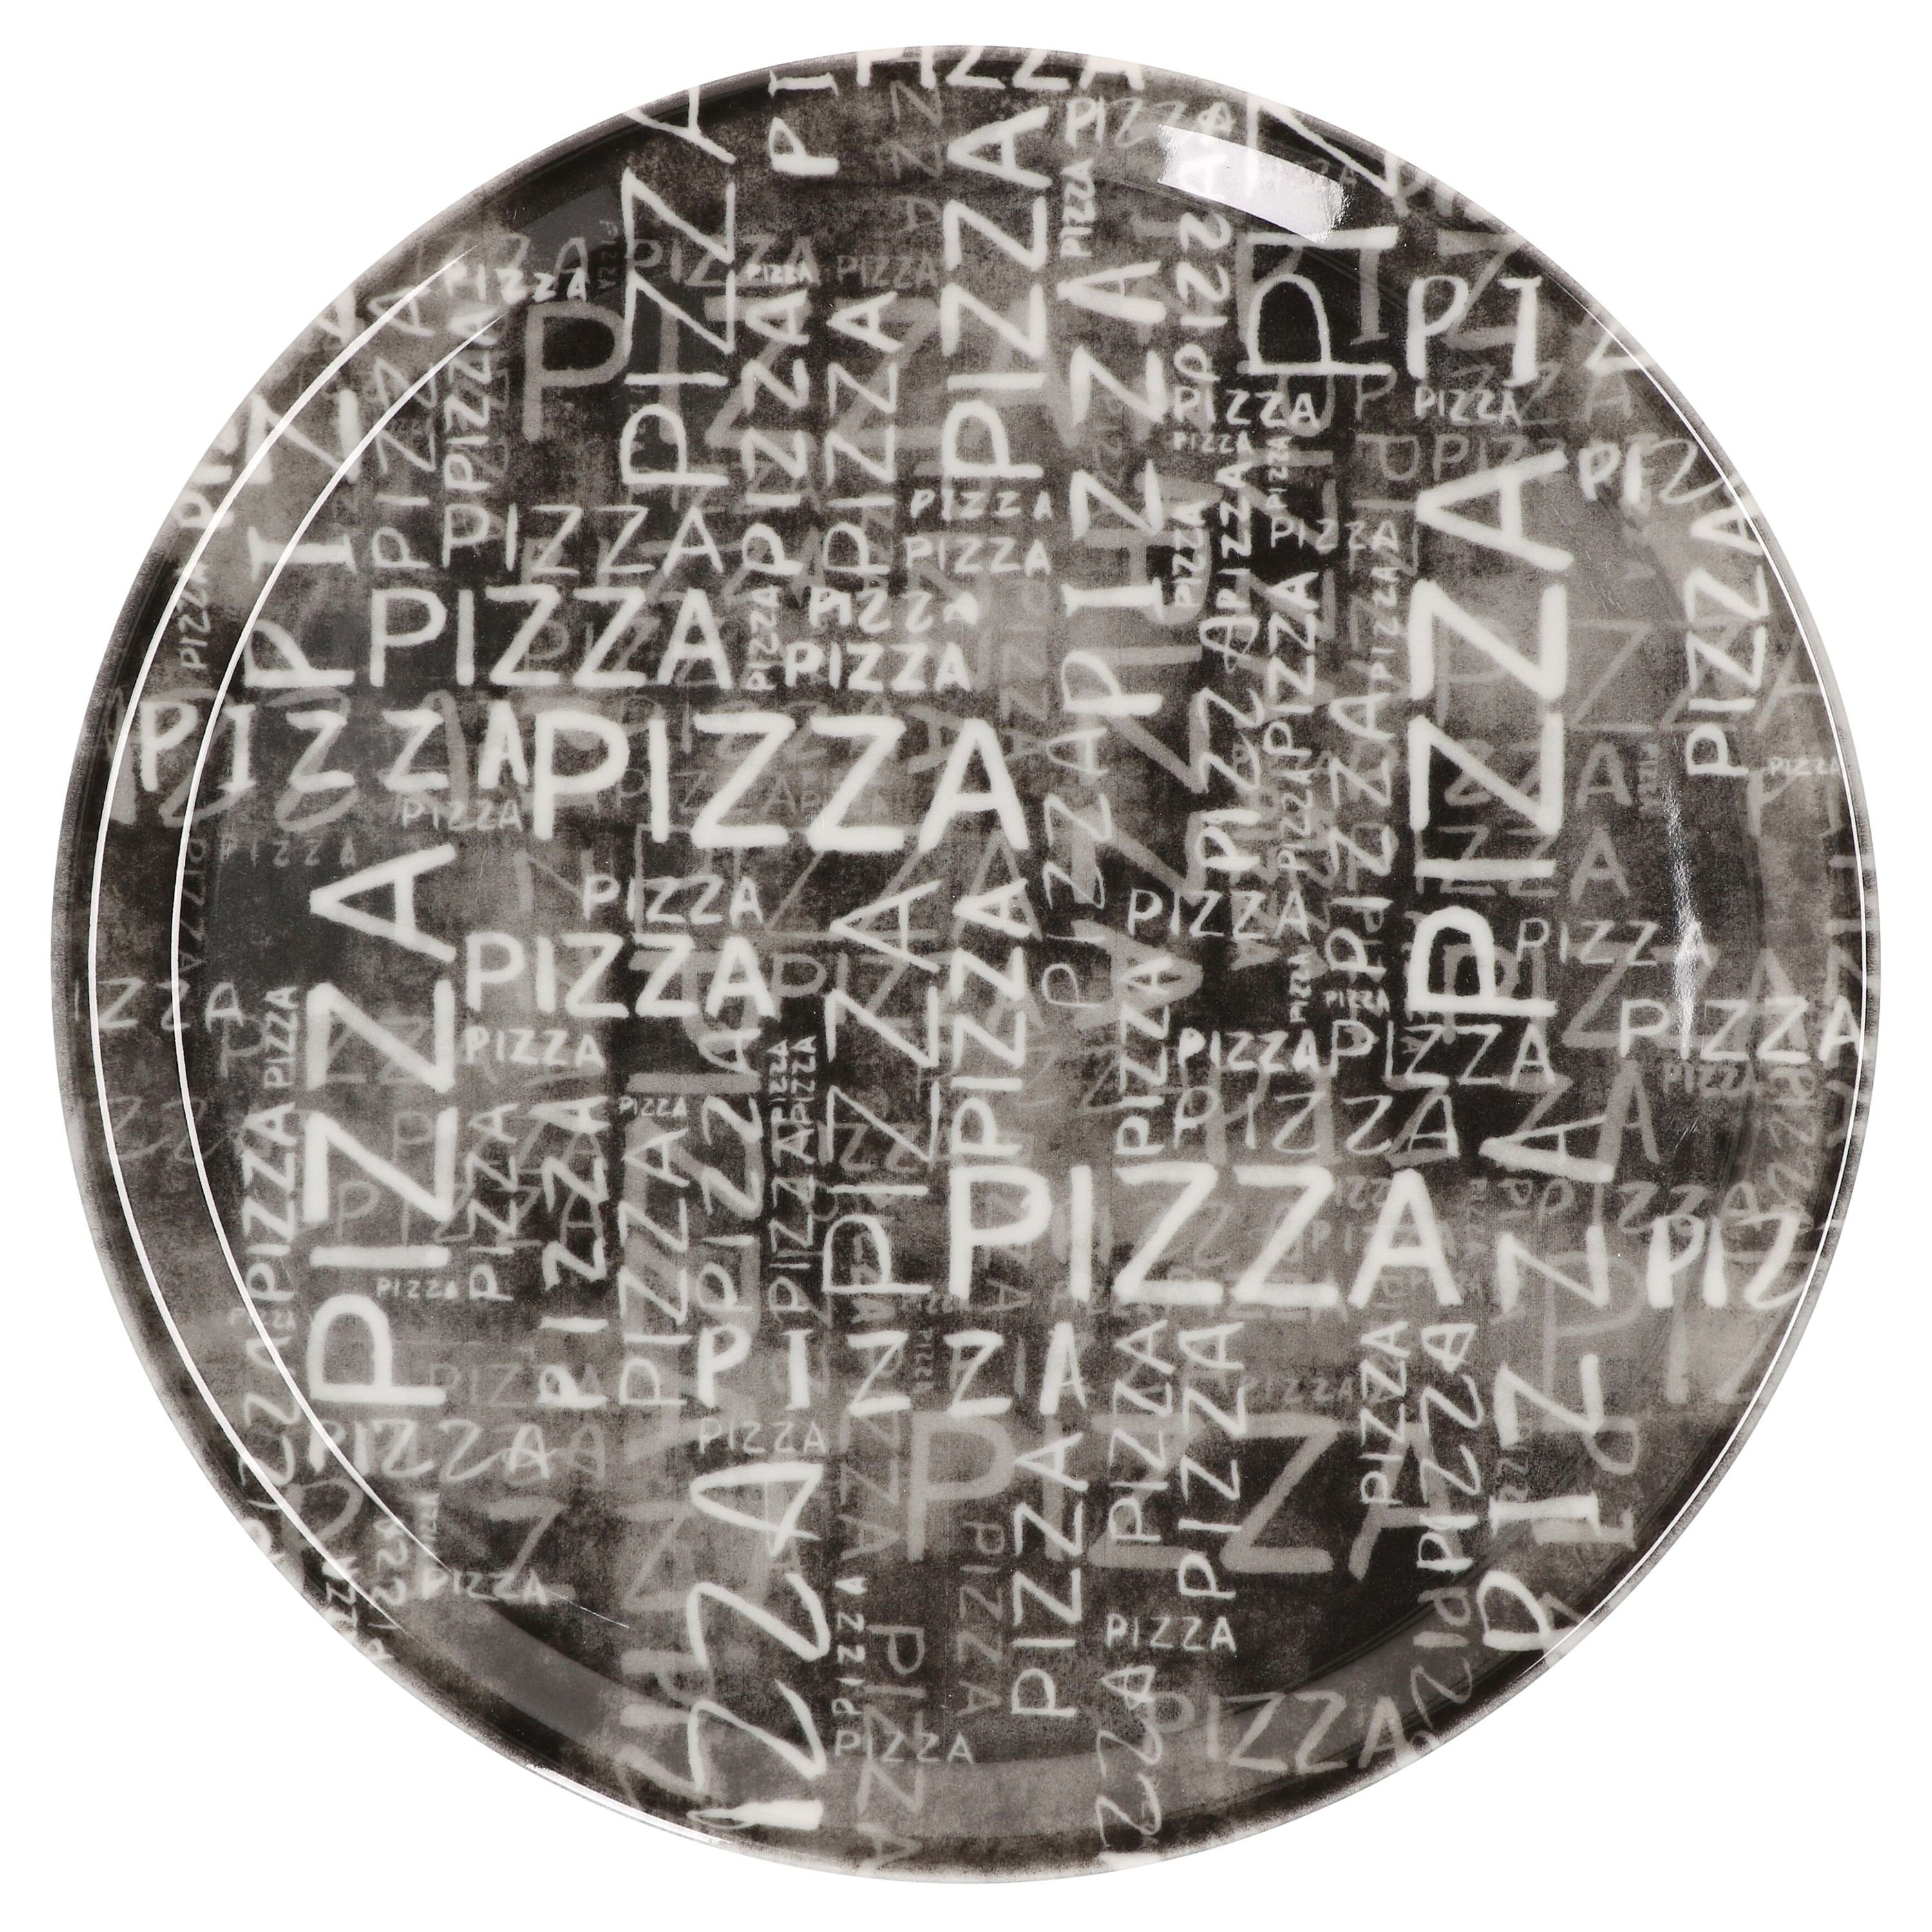 33cm Black MamboCat Pizzateller Set Pizzateller 04018#Z70 - Napoli 6er